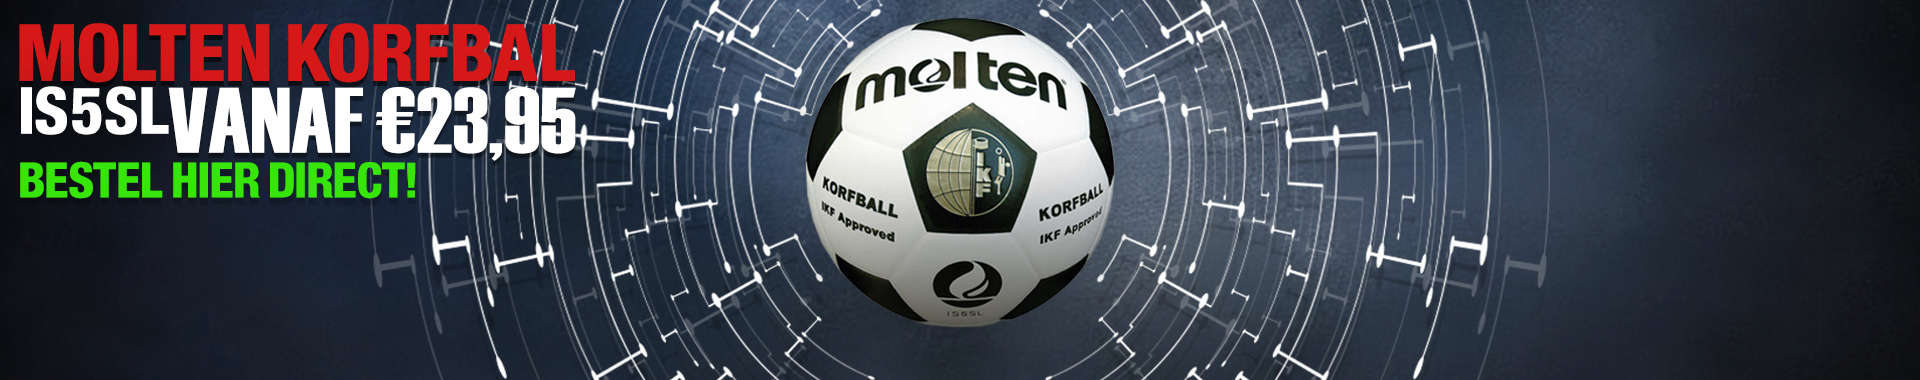 Korfbalshop, voor al je Korfbal benodigdheden: Gameballs.nl!